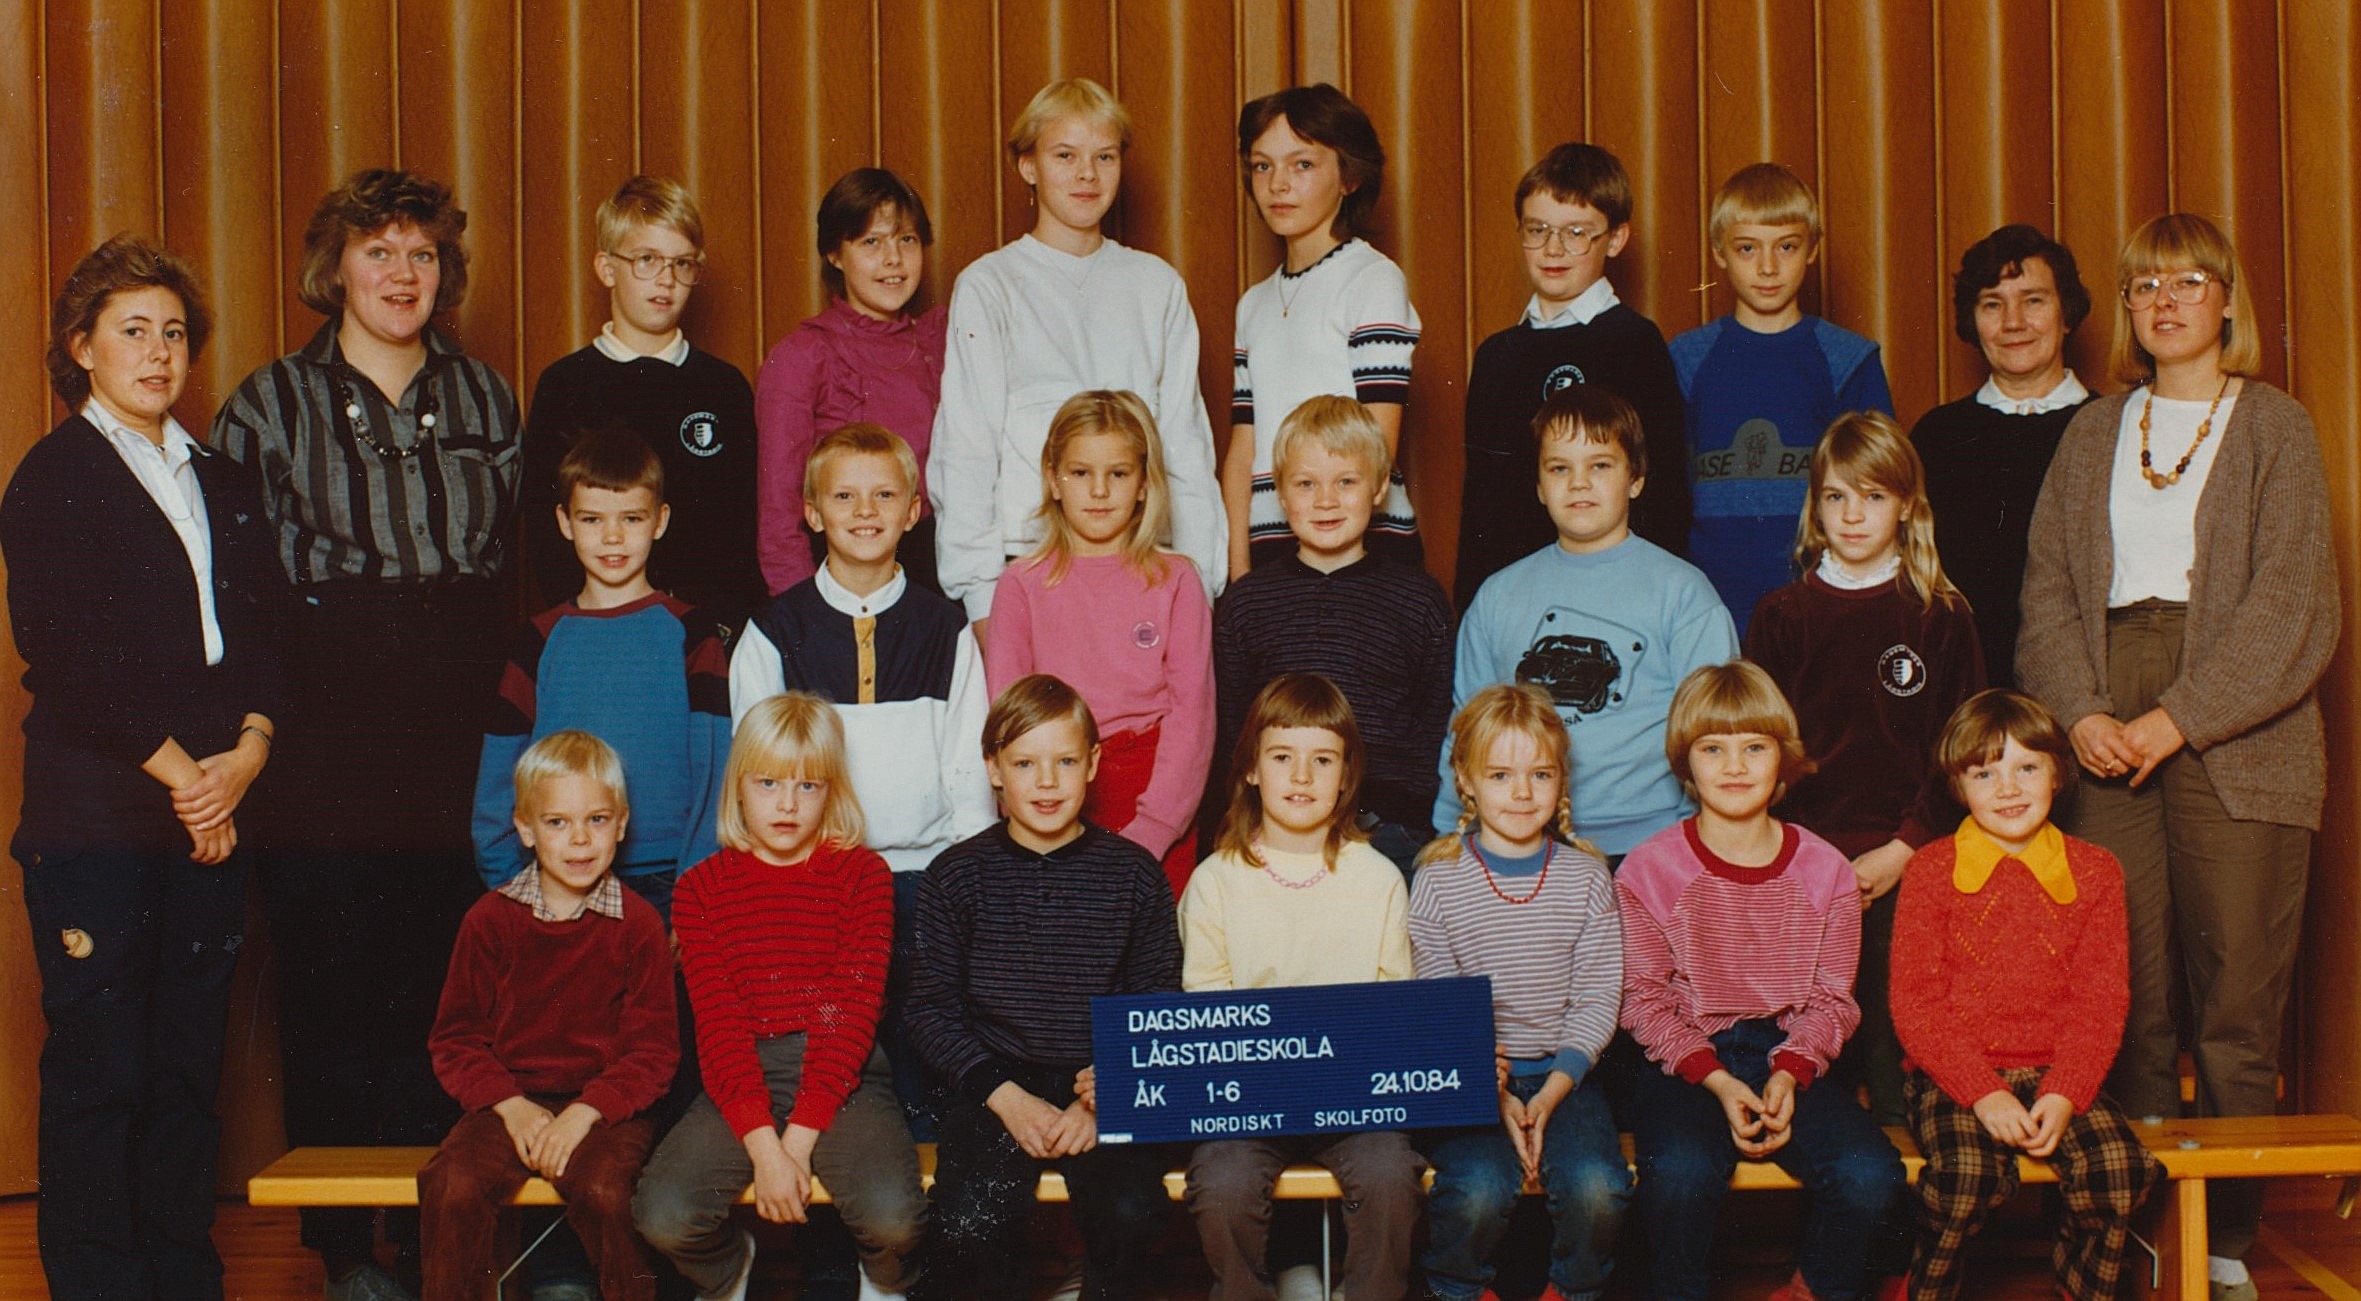 År 1984, Dagsmark lågstadieskola.